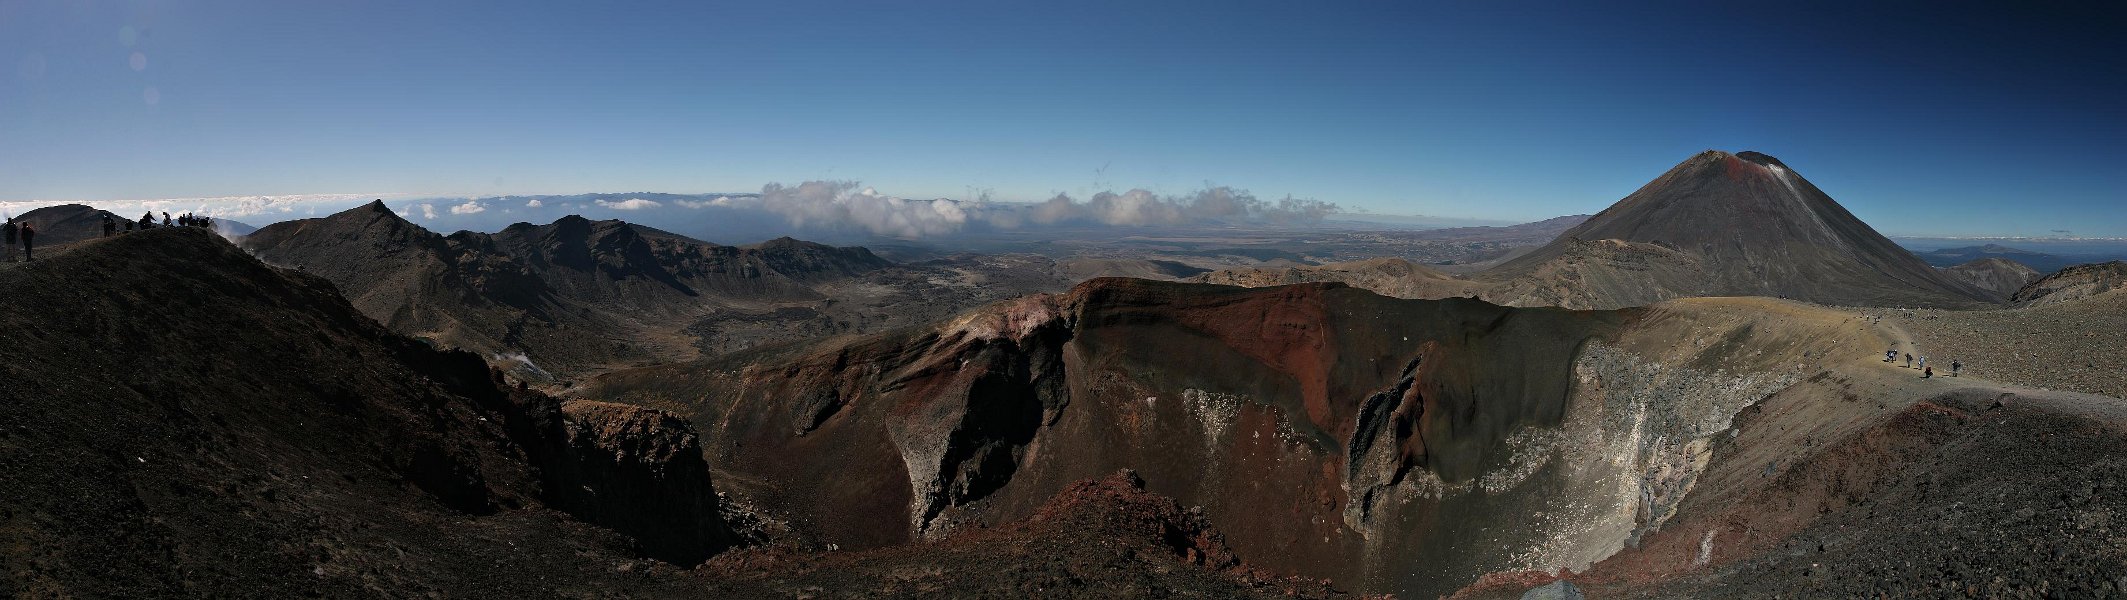 Blick in den Red Crater mit einem Riss in der Seitewand, an dem Lava ausgetreten war. Der Riss erinnert ein wenig an Schamlippen